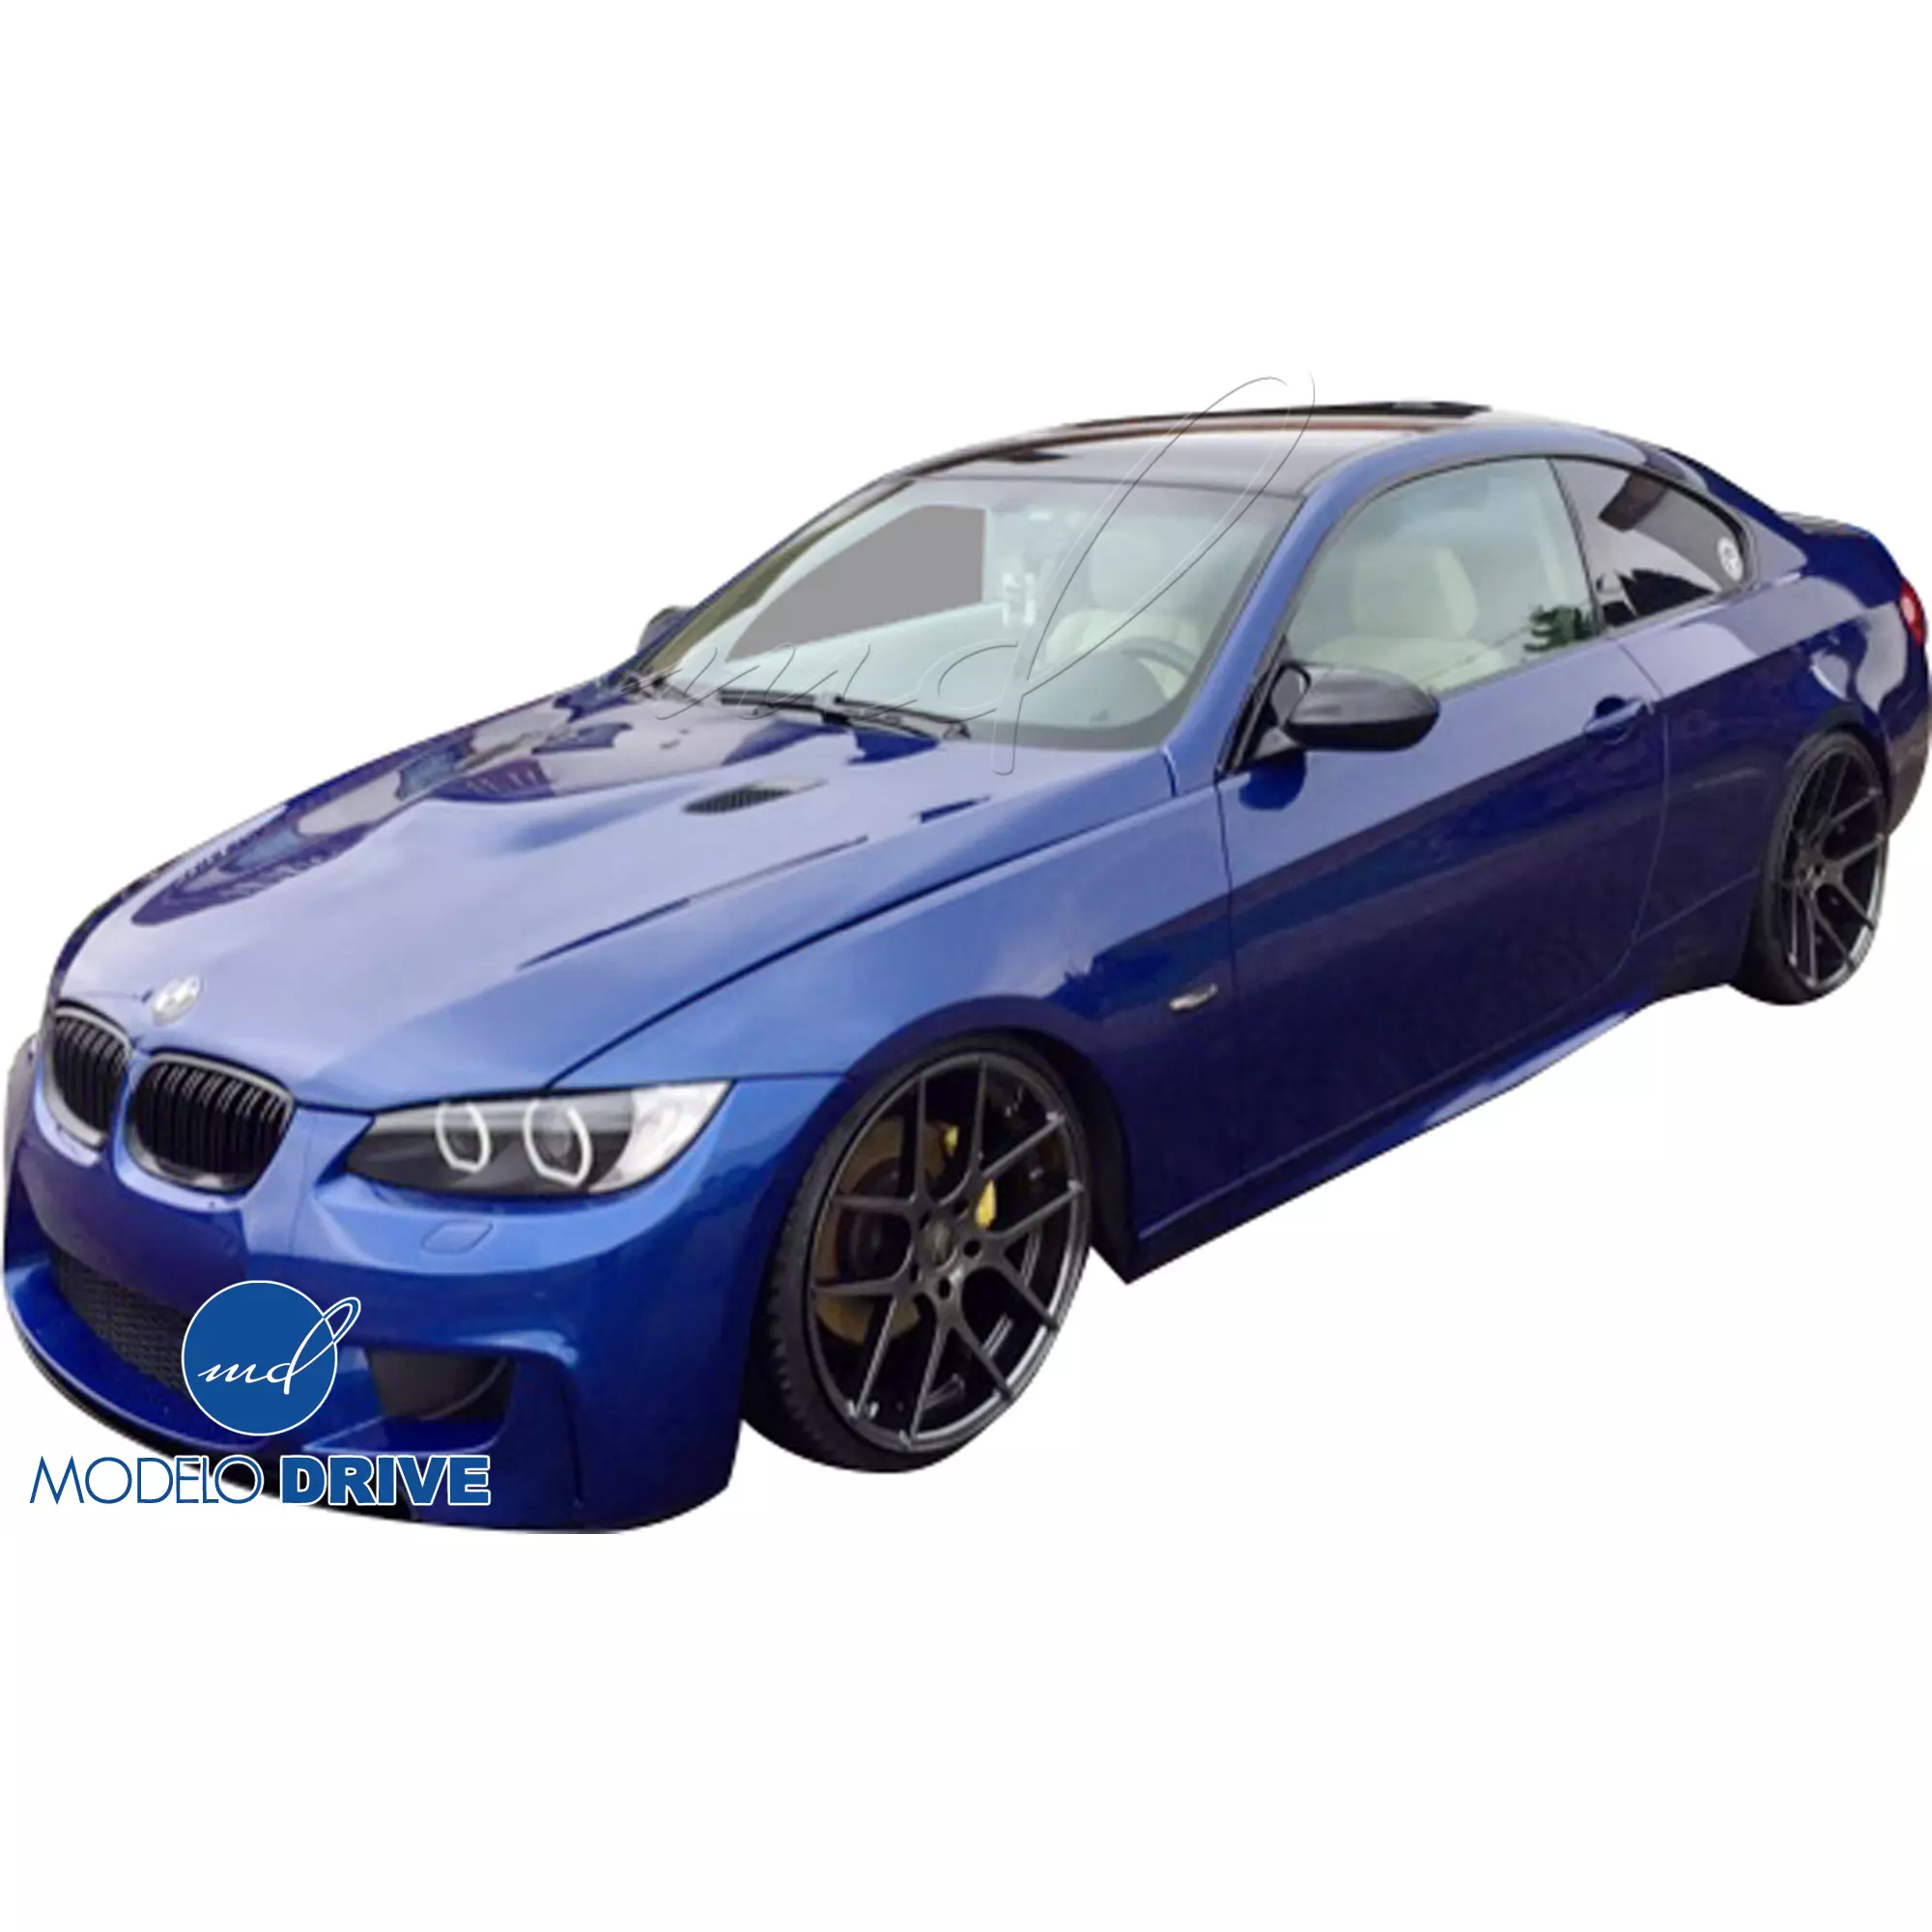 ModeloDrive FRP 1M-Style Body Kit 4pc > BMW 3-Series E92 2007-2010 > 2dr - Image 6